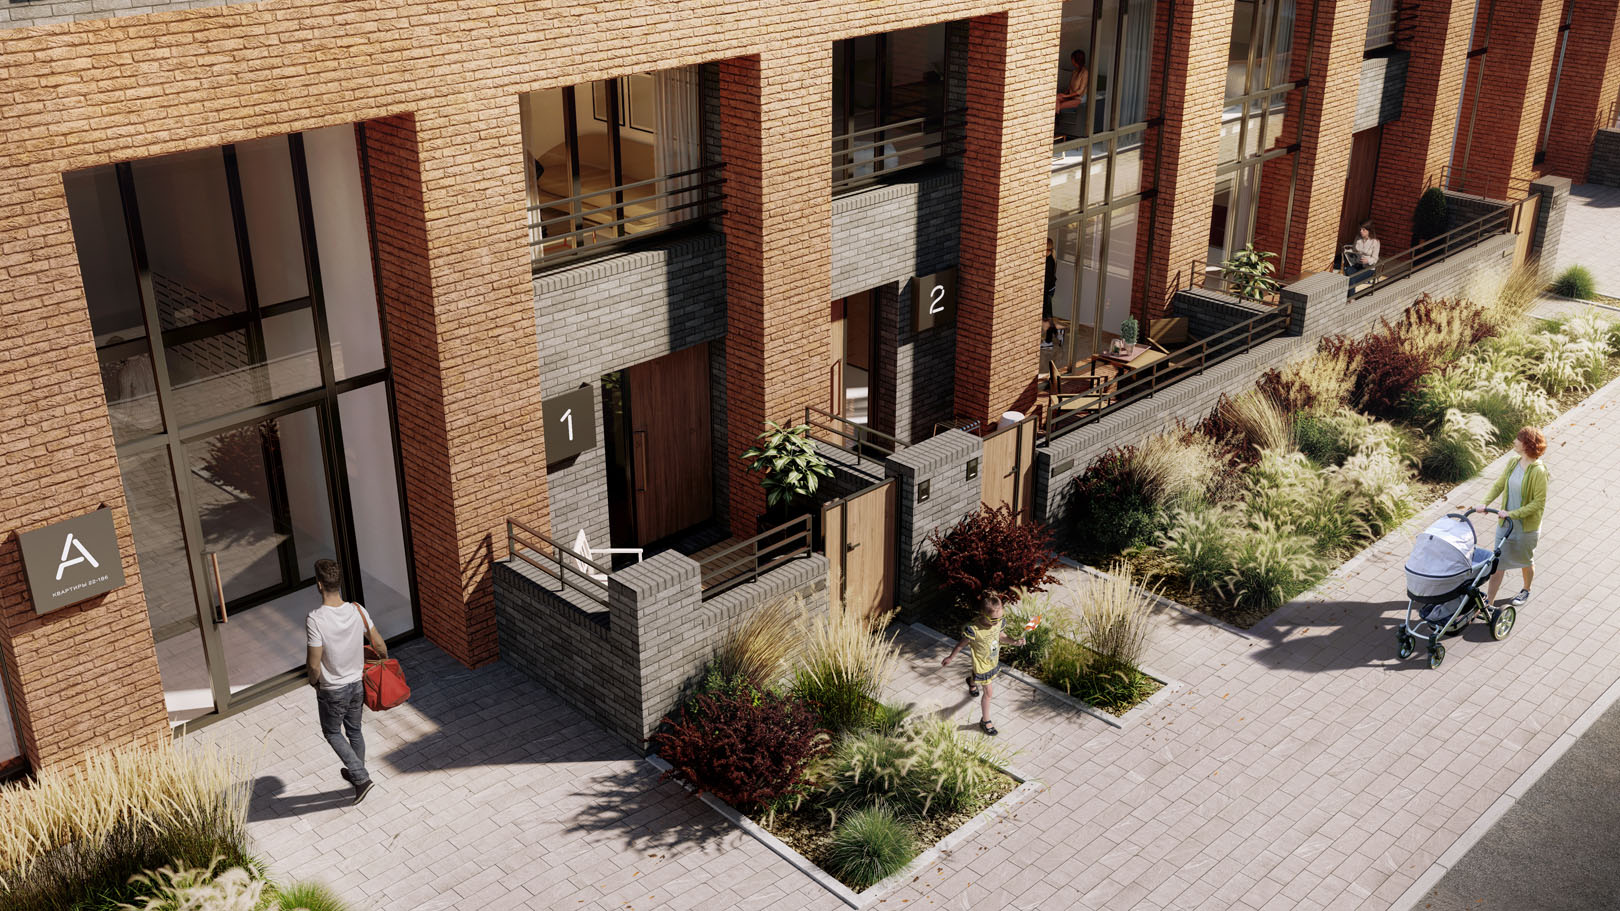 Отдельные входы в квартиры с улицы придают городскому жилью загородную функцию и повышает приватность проживания